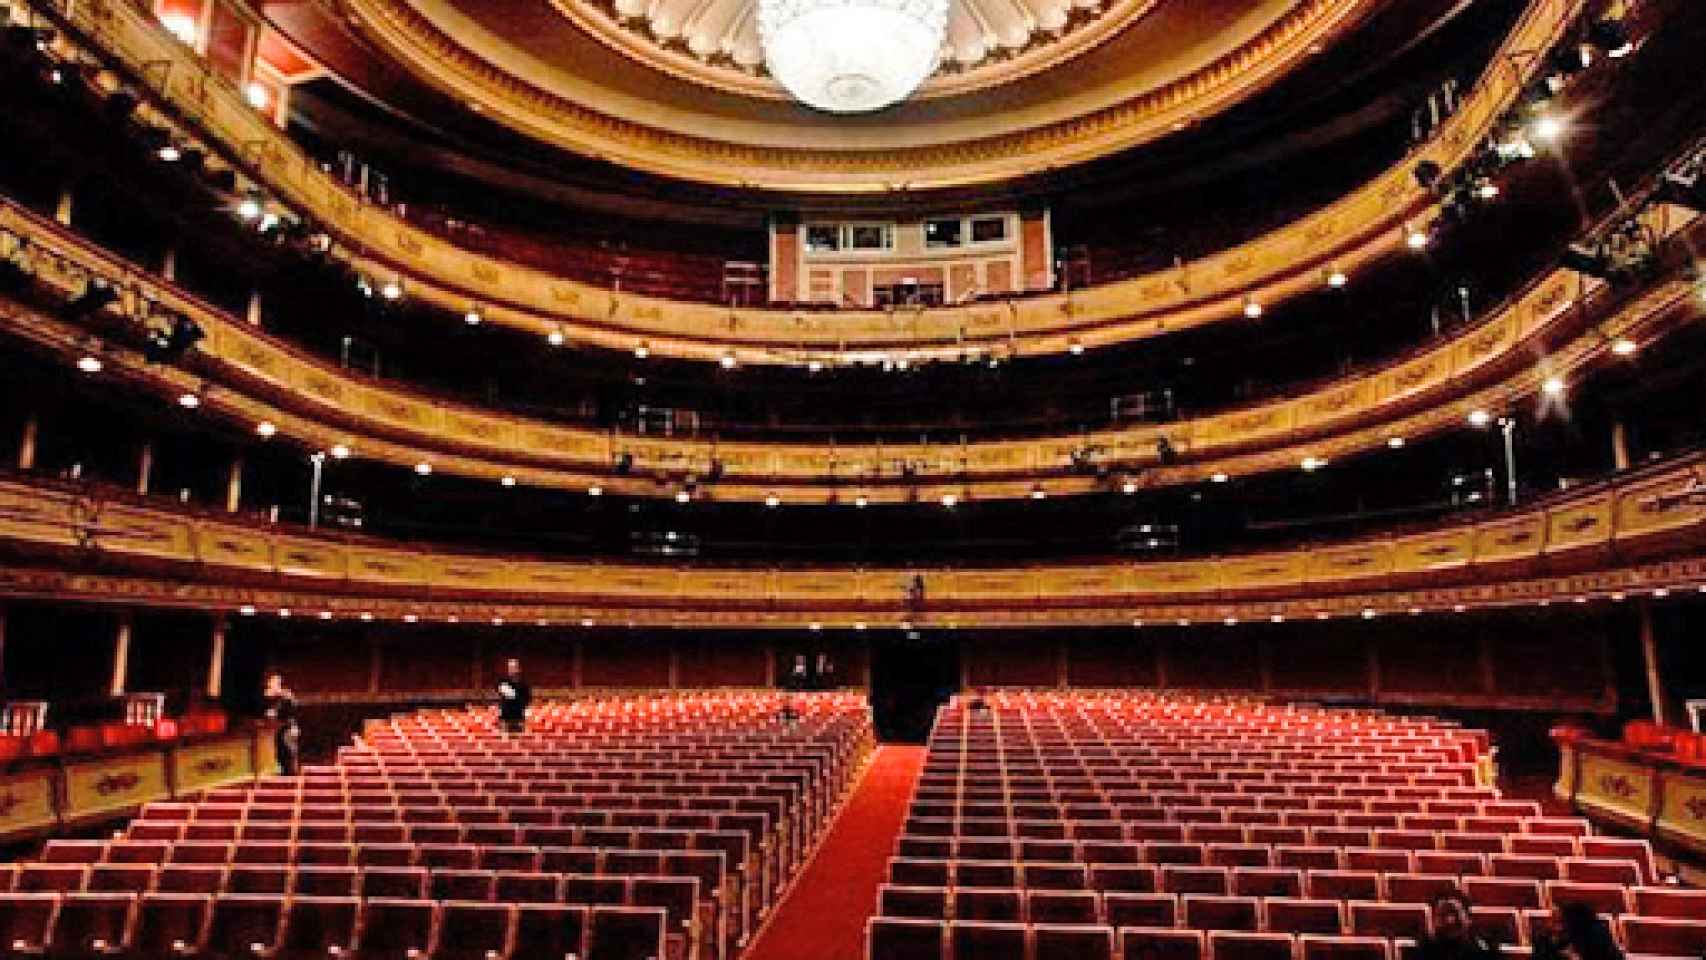 Image: Aprobada la fusión del Teatro Real y el Teatro de la Zarzuela